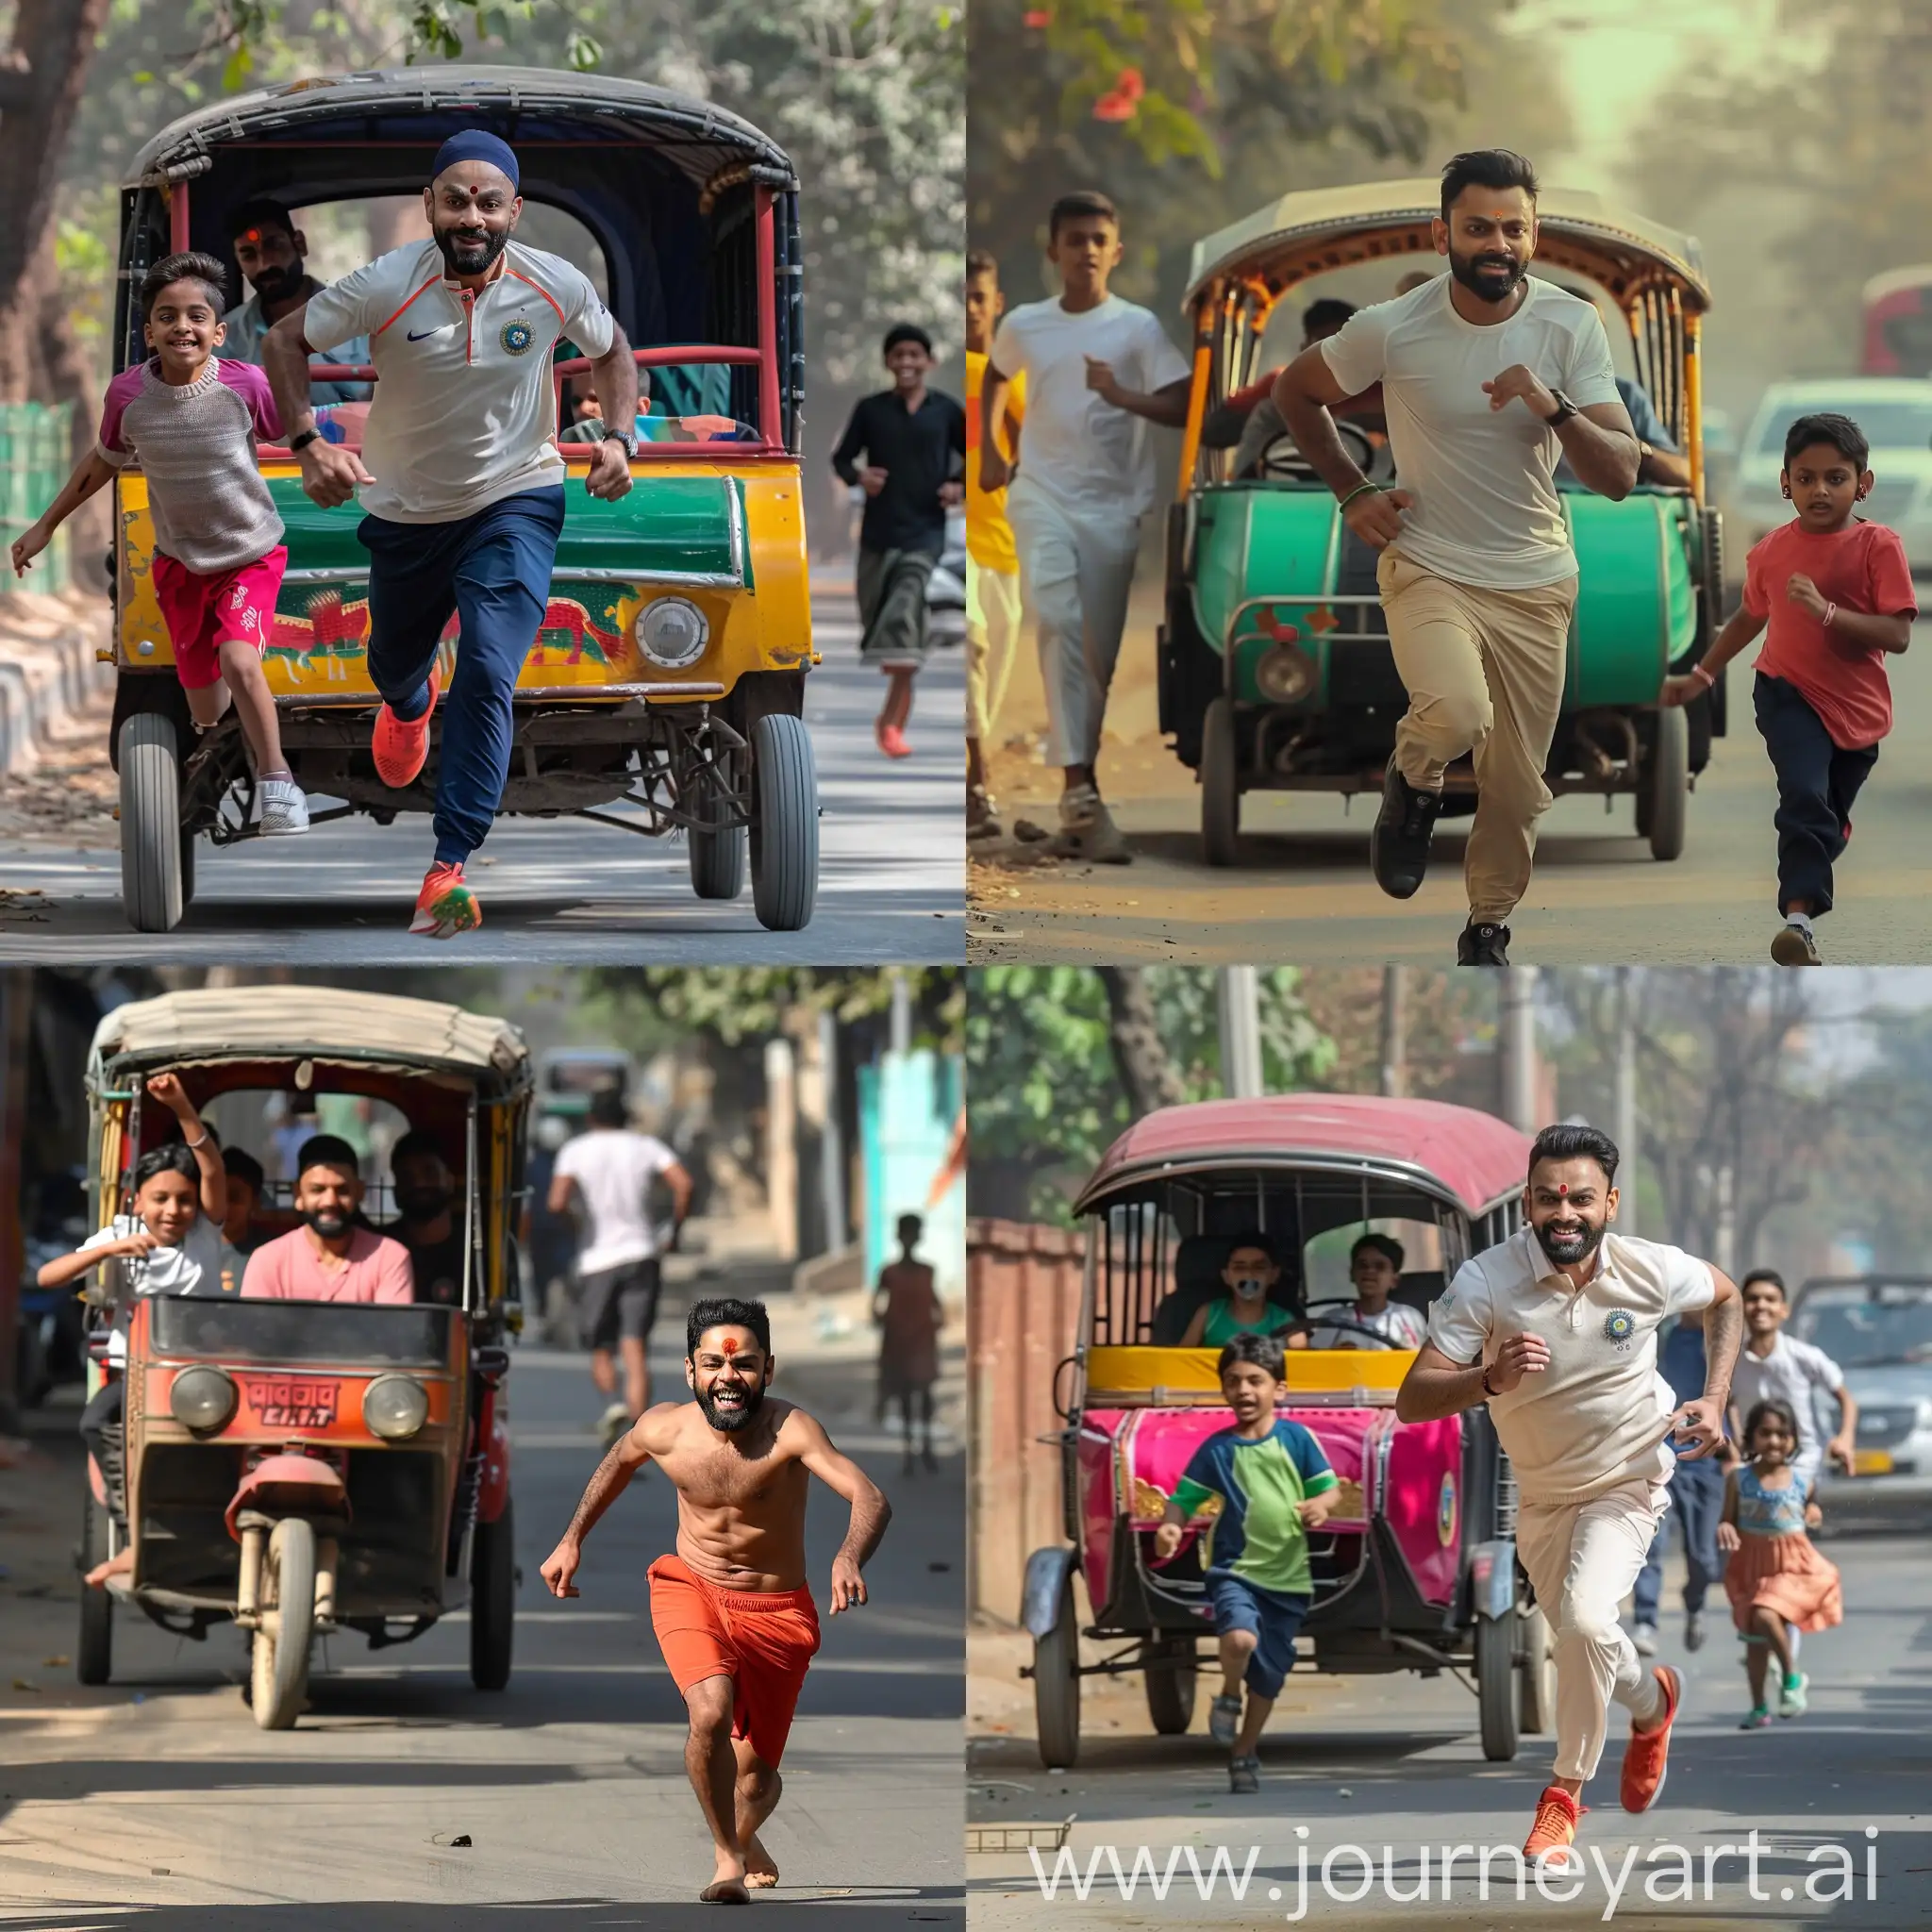 virat kohli running behind indian autorickshaw, kid dancing